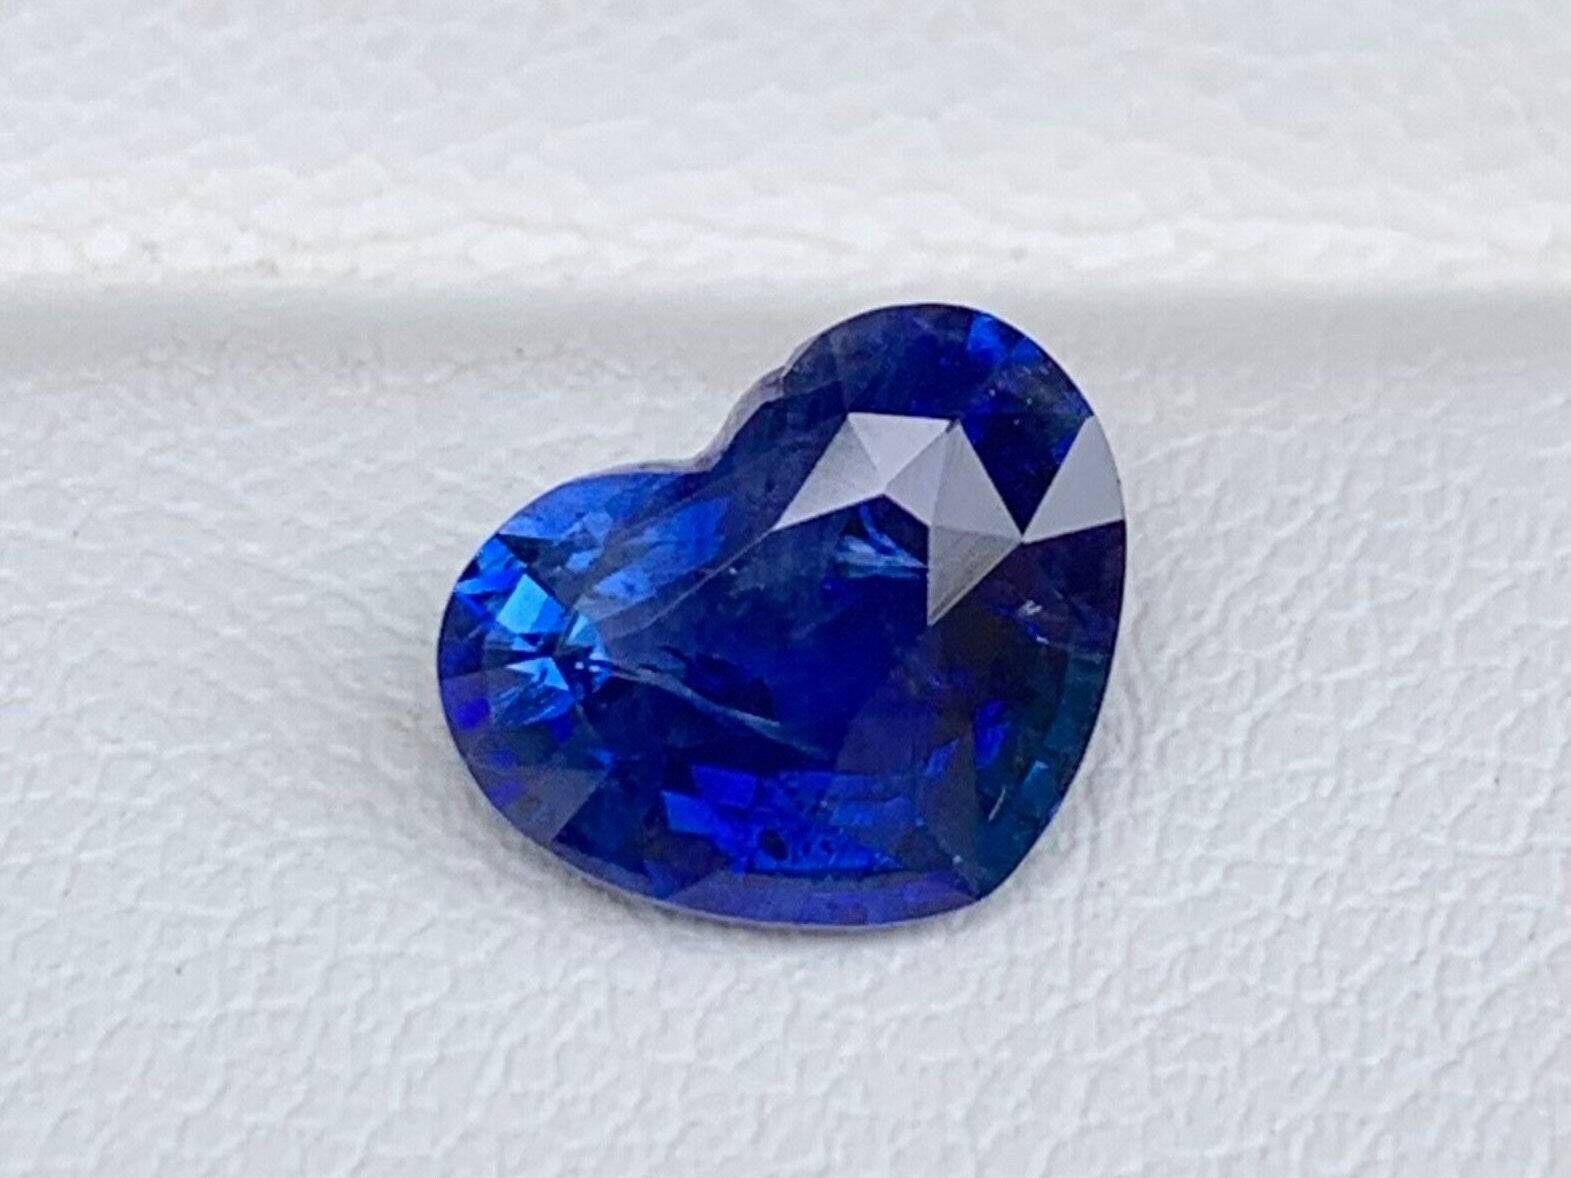 2.23 Carats Blue sapphire - Baza Boutique 